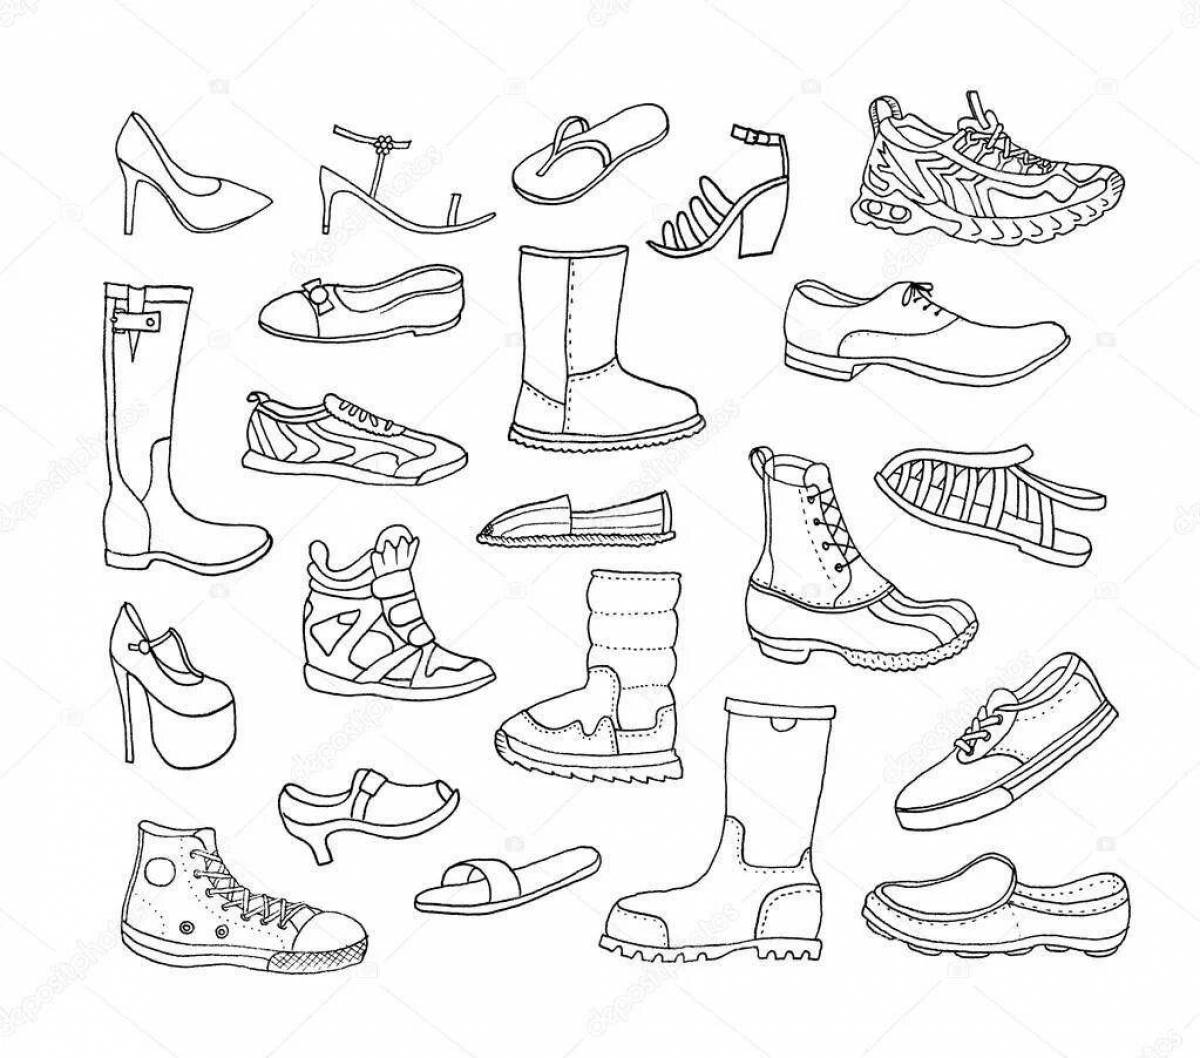 Контурные изображения одежды, обуви